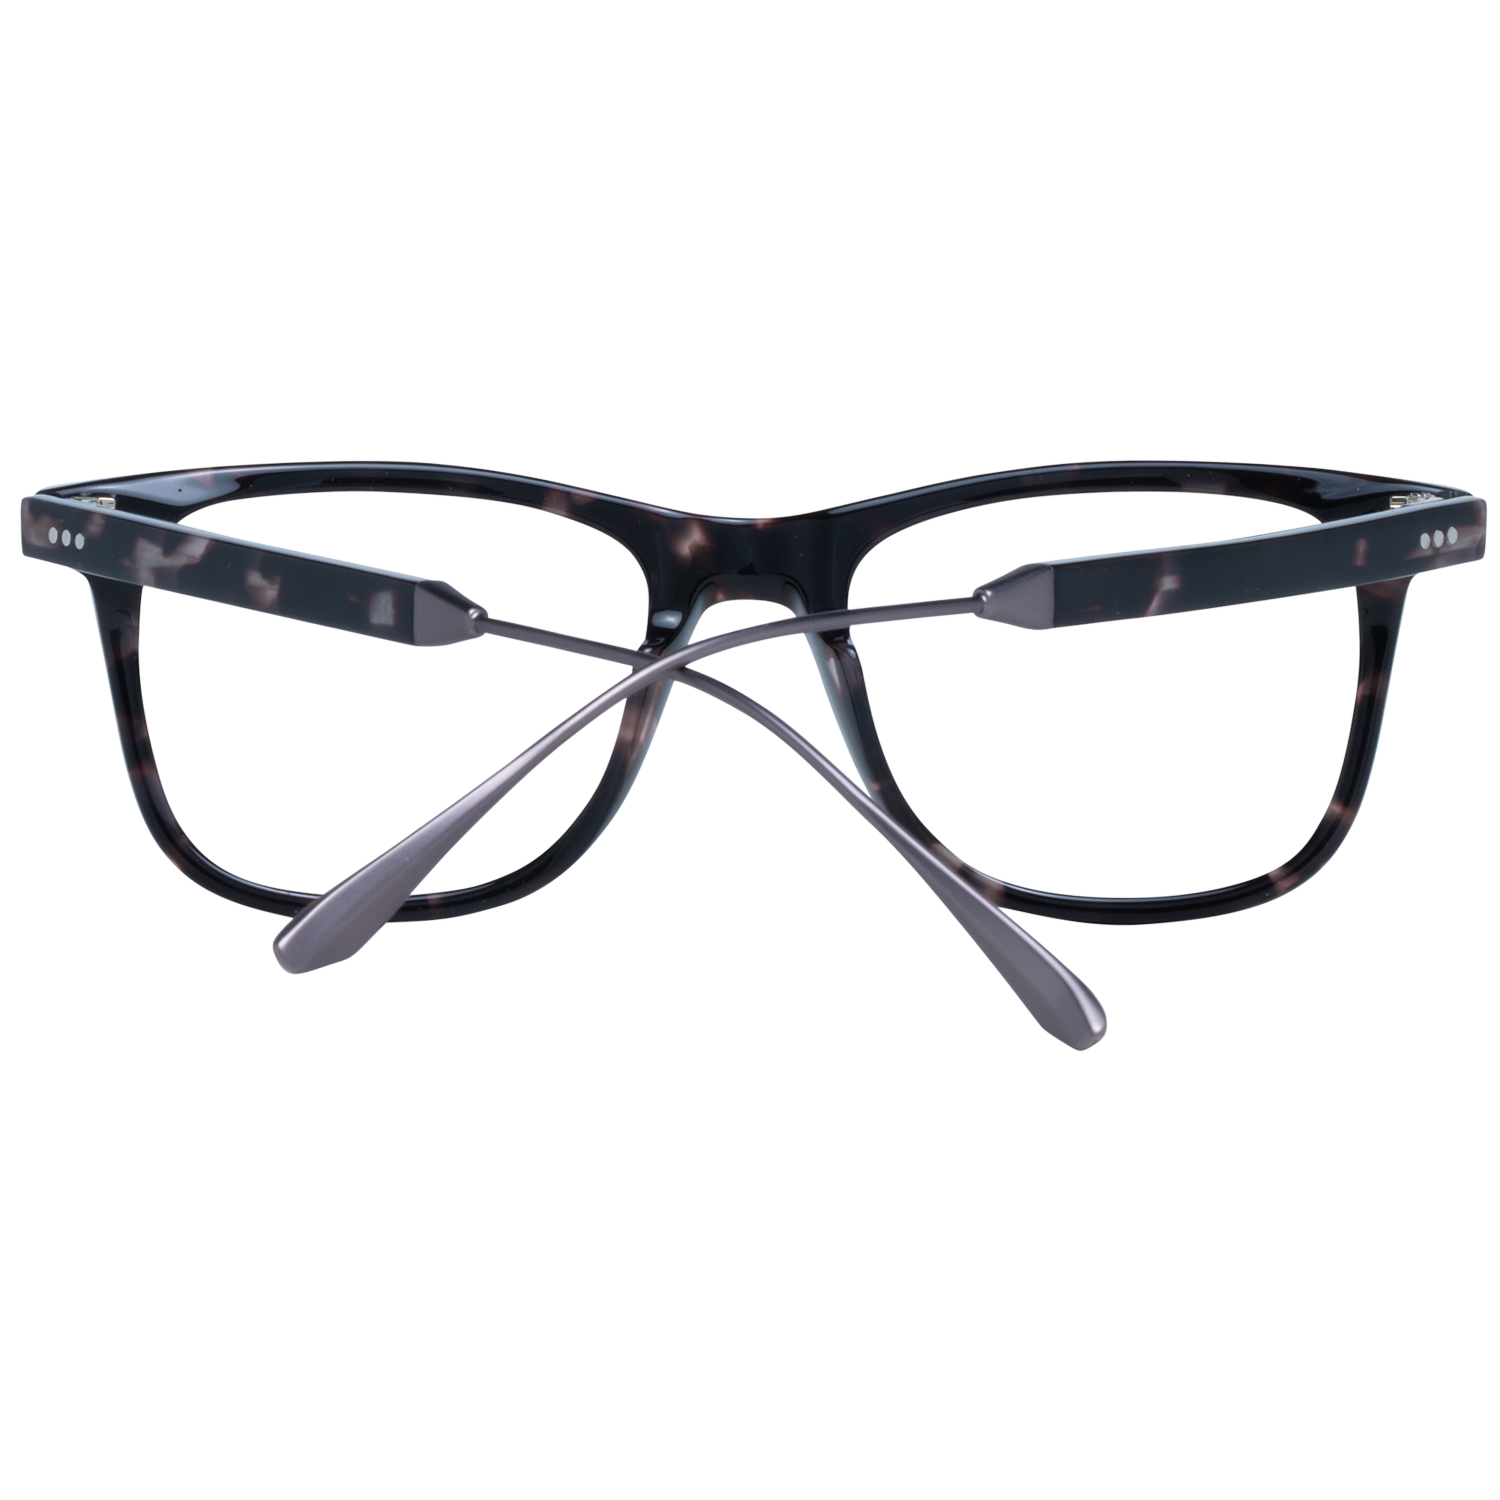 Sandro Frames Sandro Optical Frame SD1024 207 50 Eyeglasses Eyewear UK USA Australia 